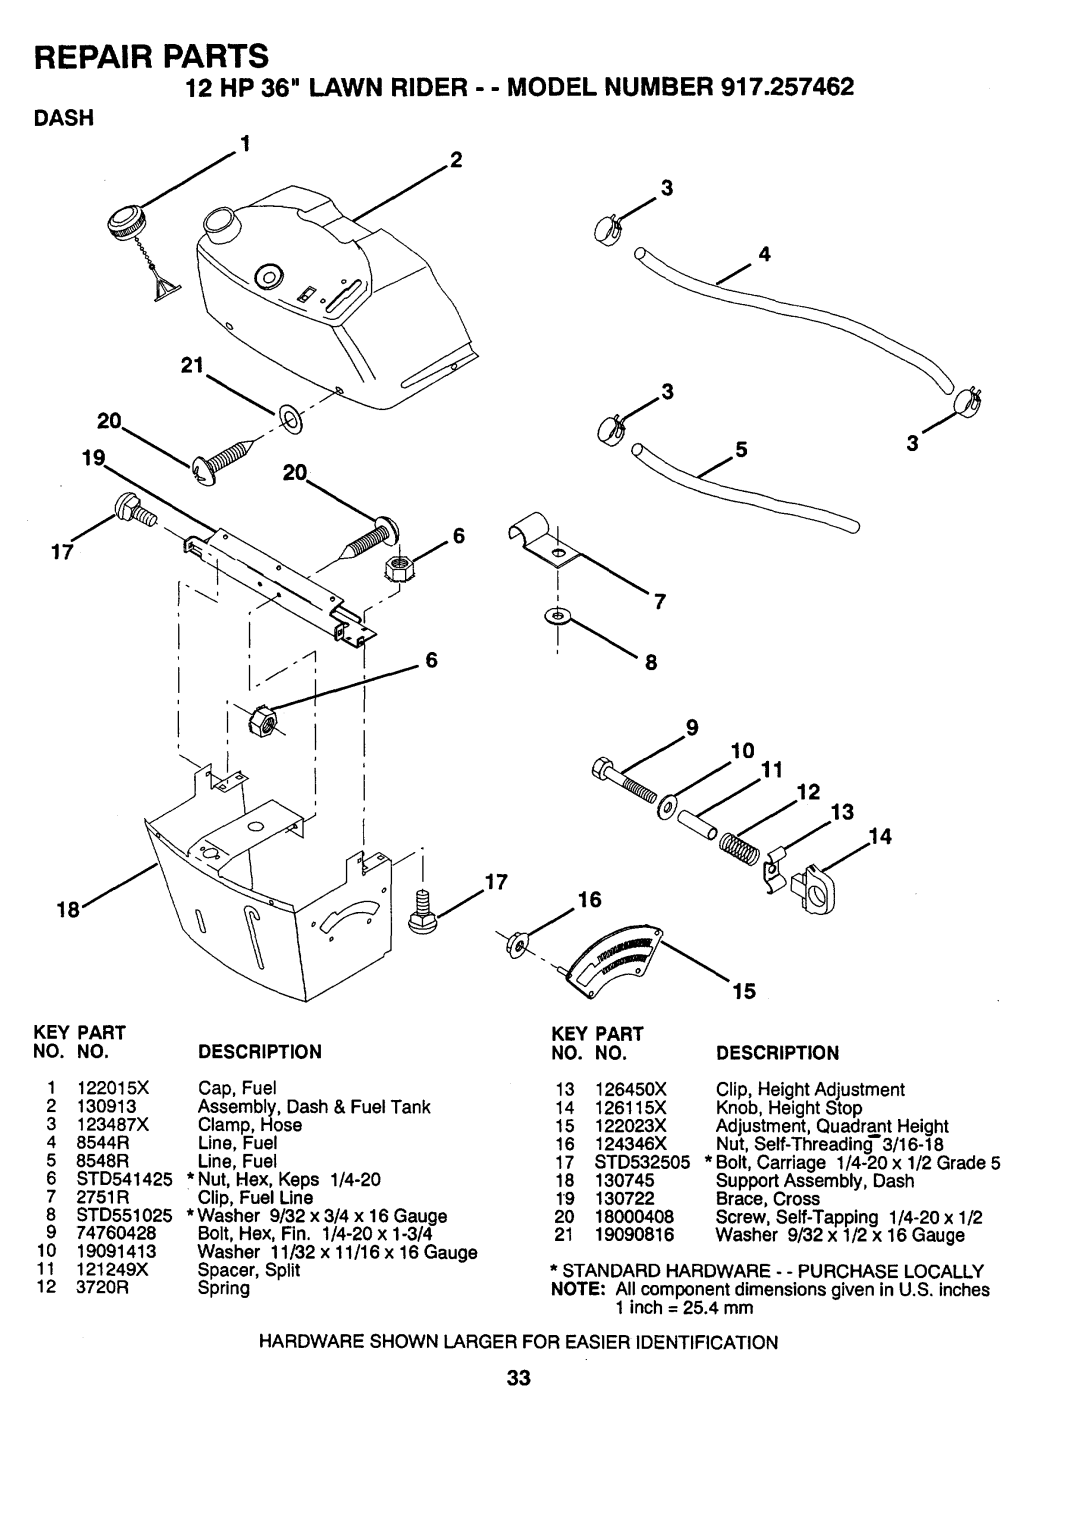 Sears 917.257462 manual Dash, 17 7 68, _ 17, Repair Parts, 12 HP 36 LAWN RIDER - - MODEL NUMBER 